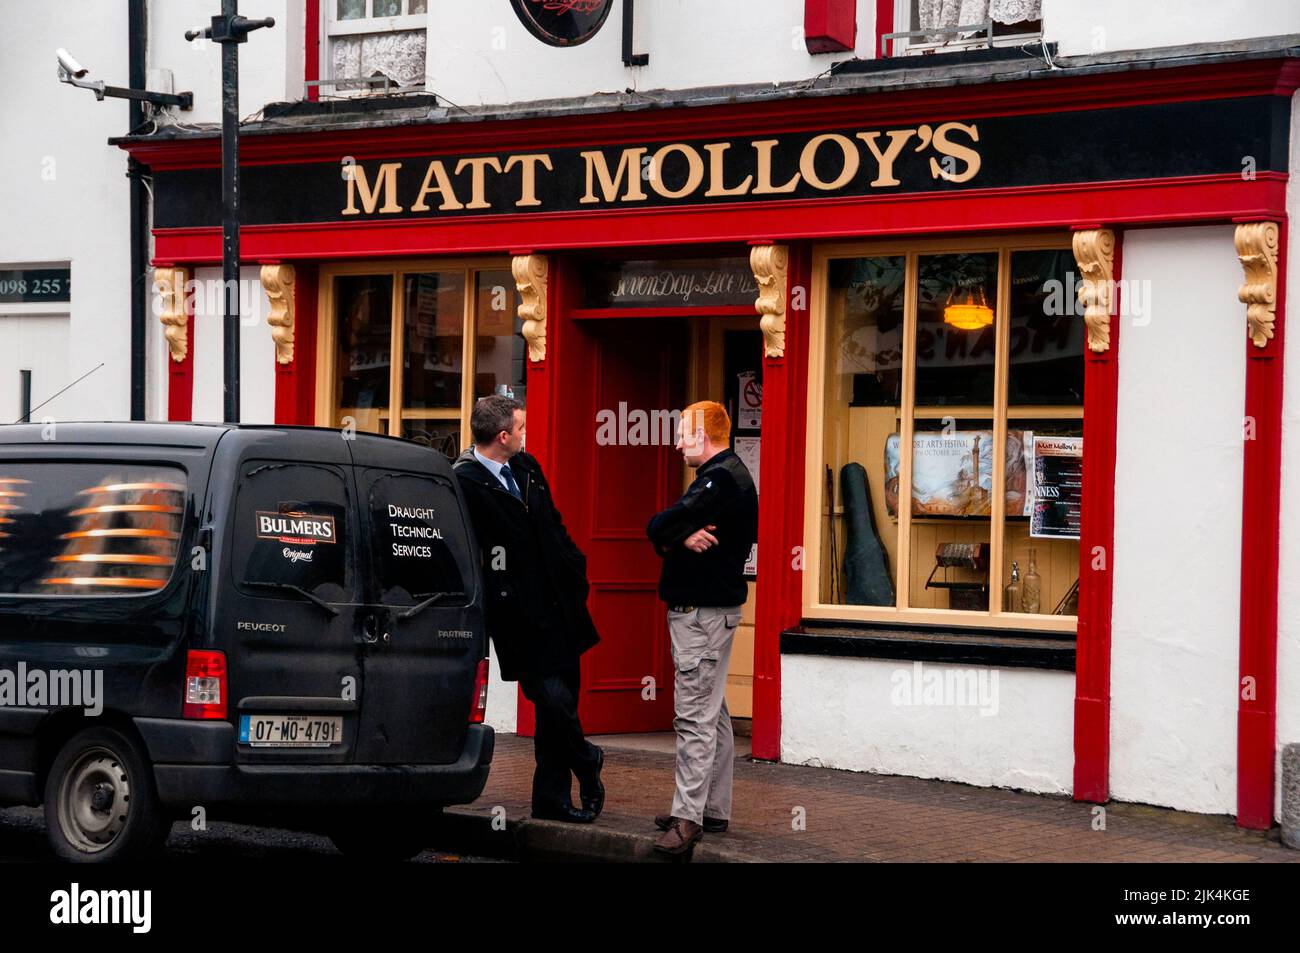 Bulmers Cider van in front Matt Molloy's famous Irish pub in Westport, Ireland. Stock Photo